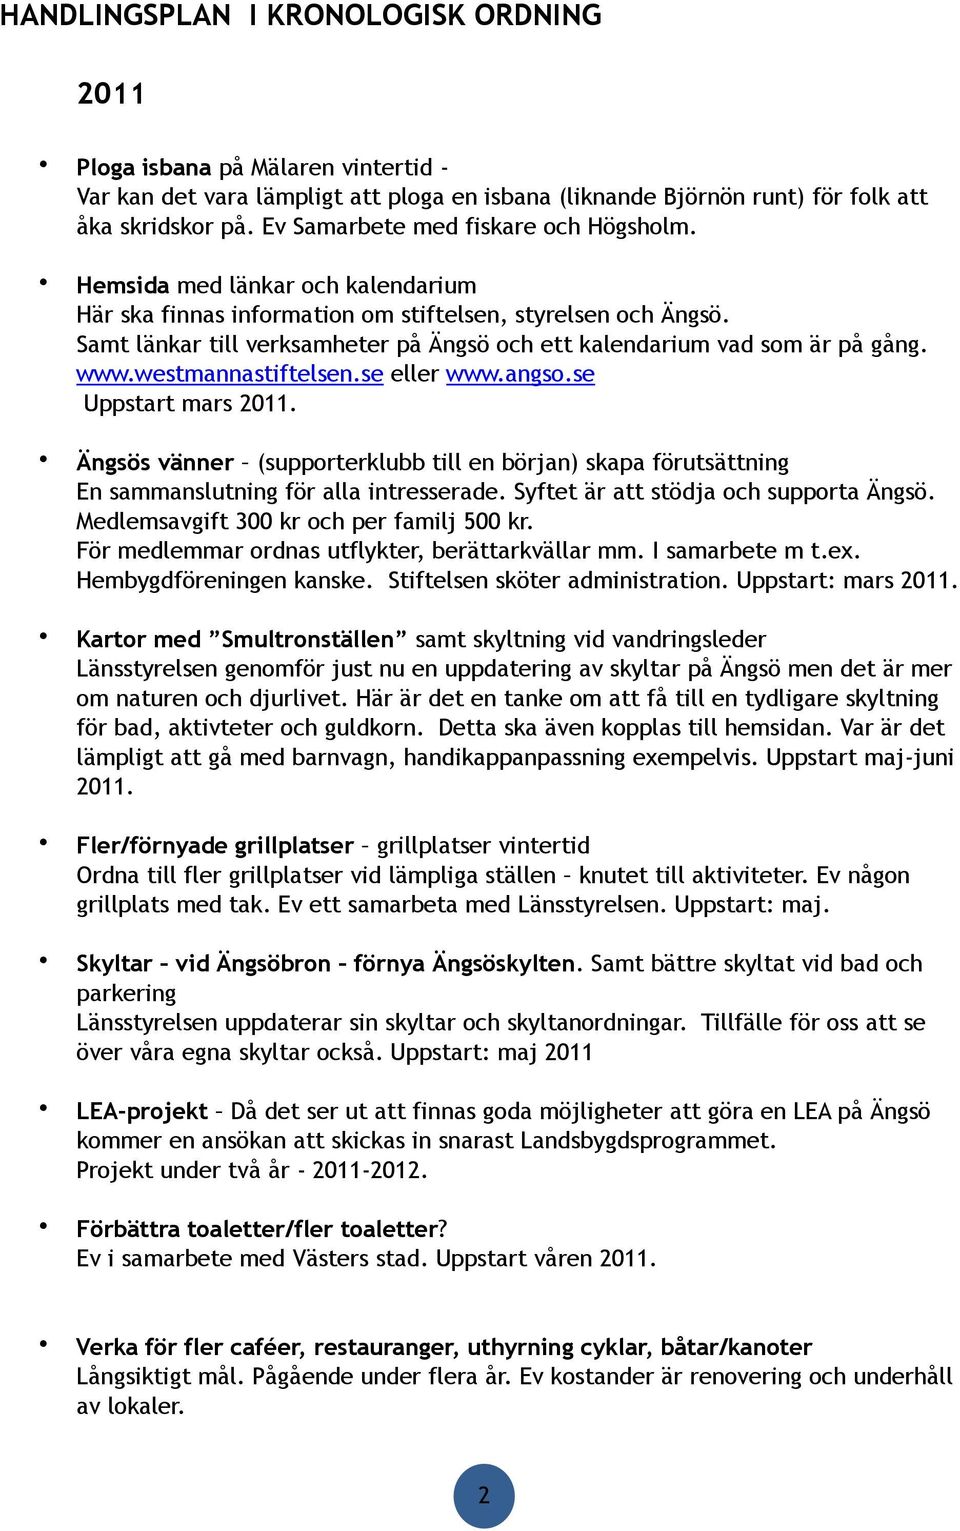 Stiftelsen sköter administration. Uppstart: mars 2011.